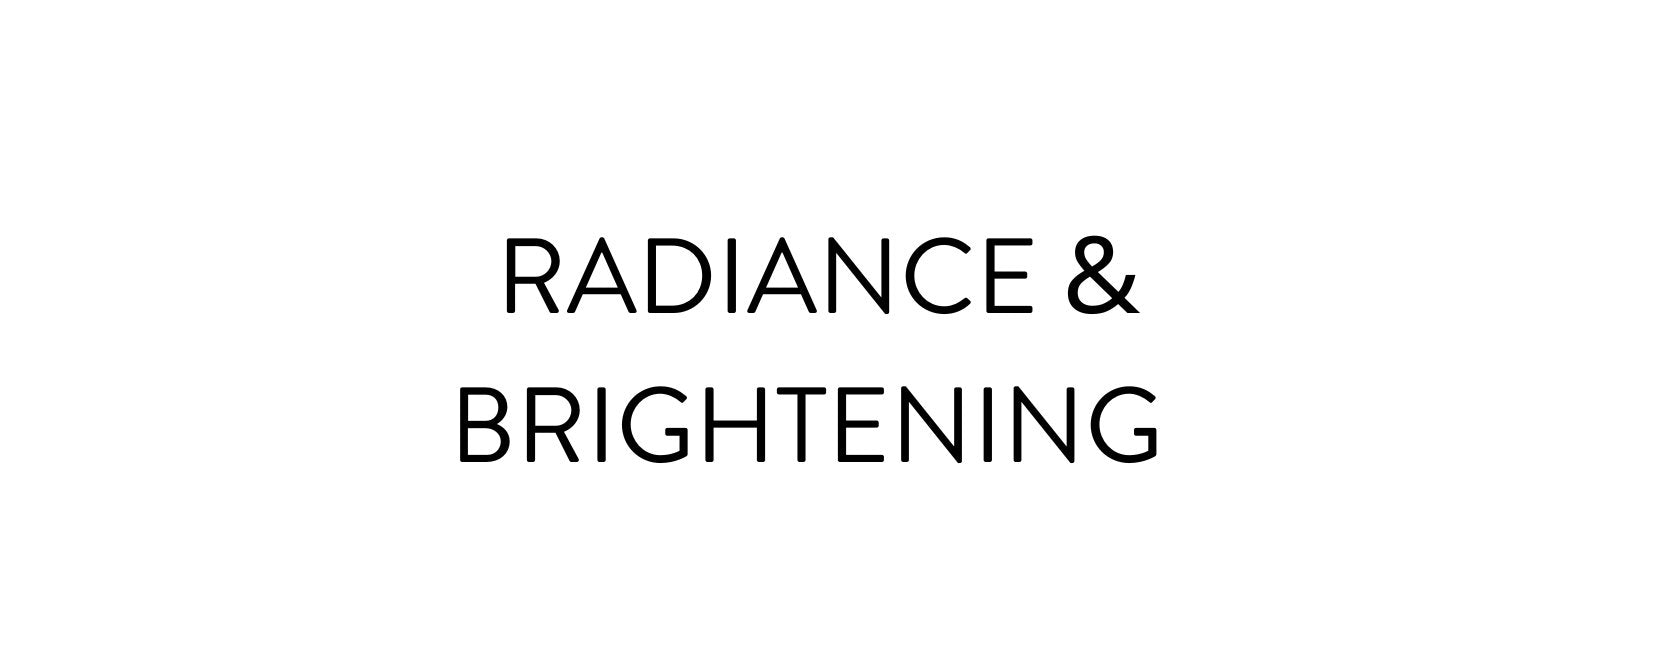 Radiance & Brightening